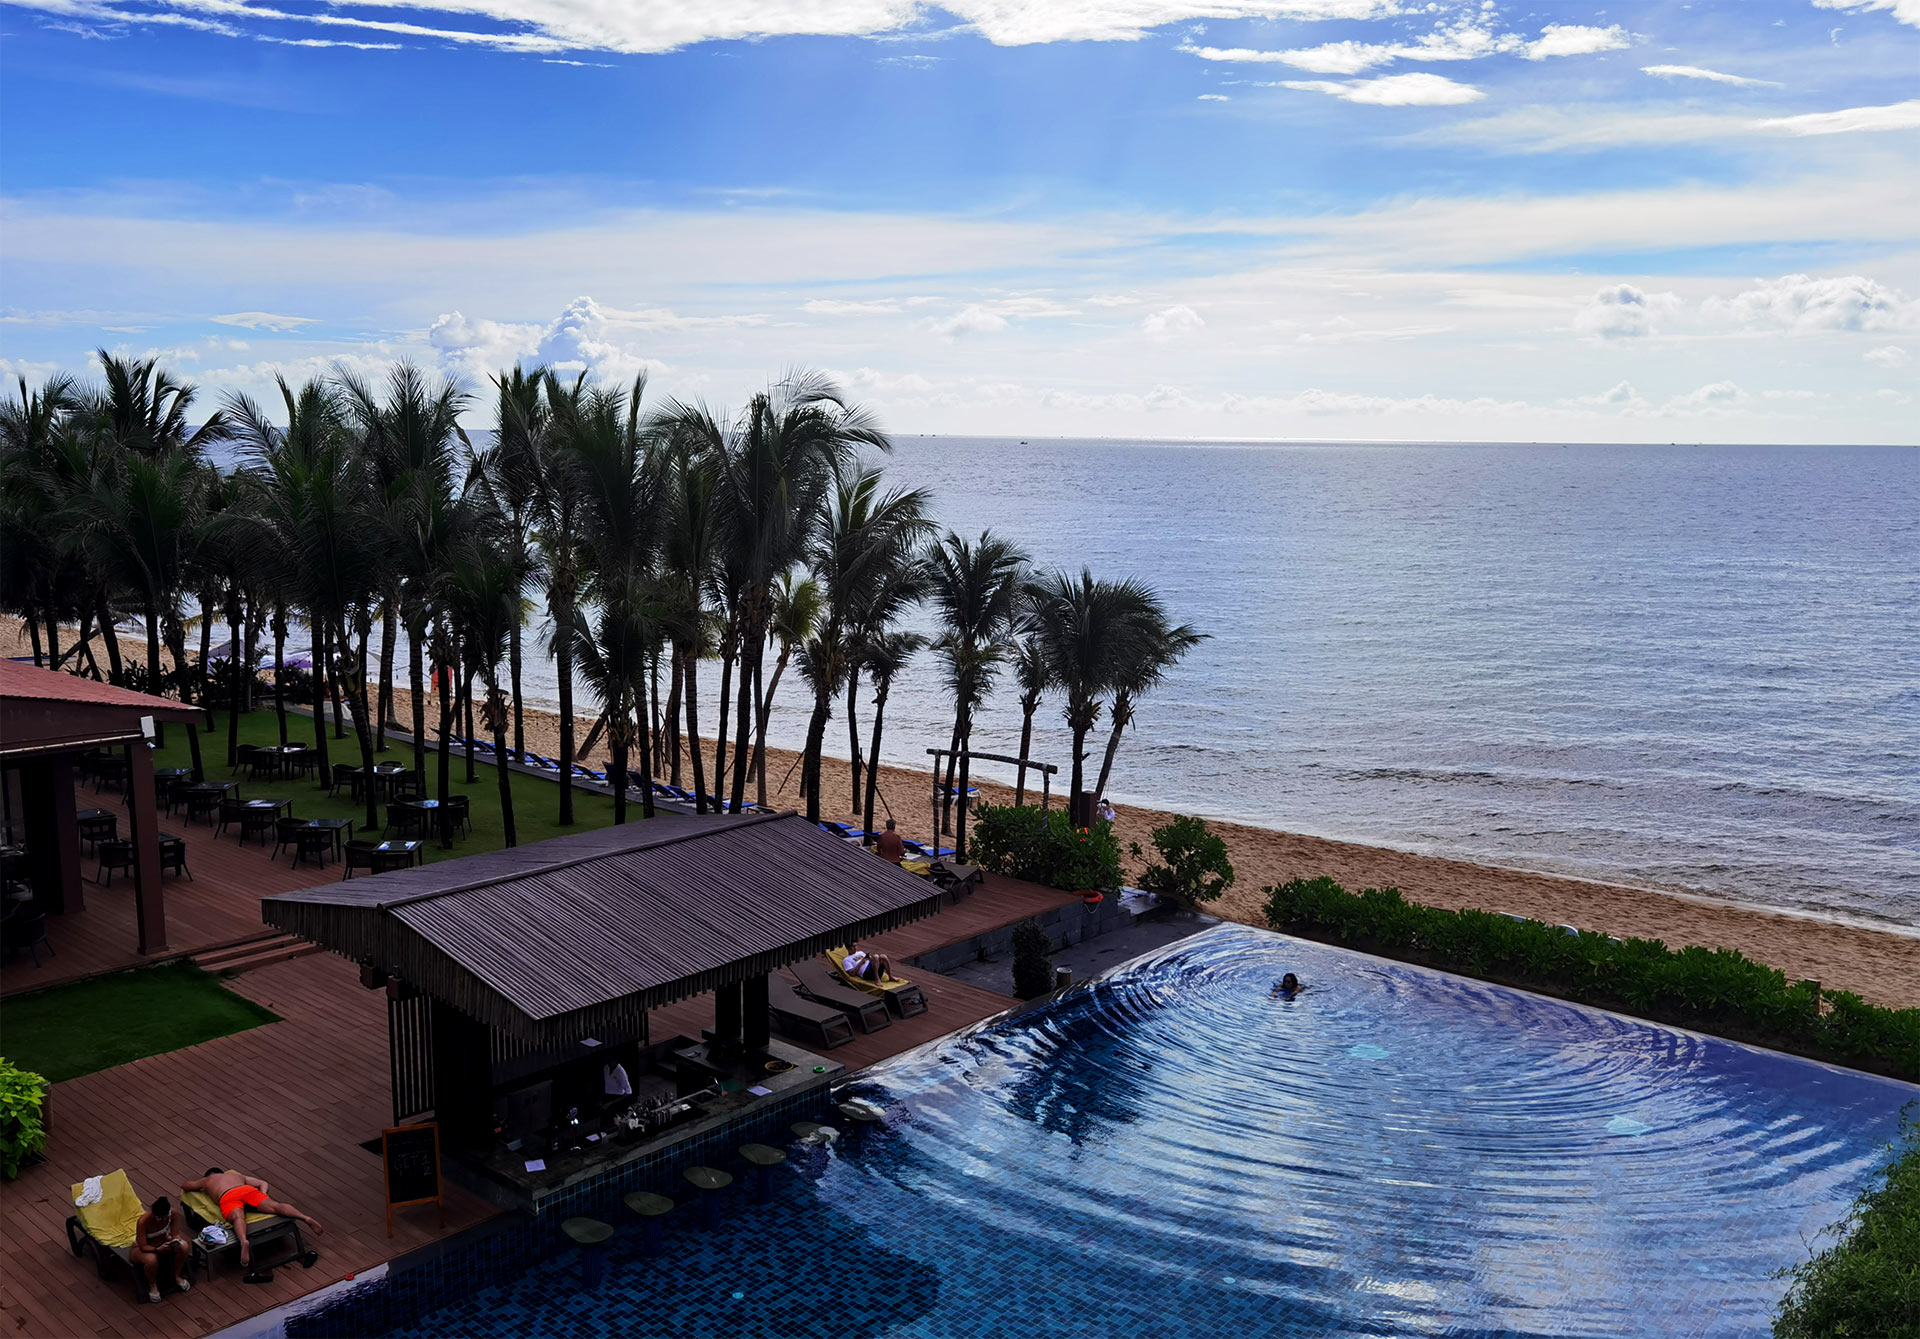 А из нашего окна полоска пляжная видна (с)Smyslik. Phu Quoc. Vietnam.